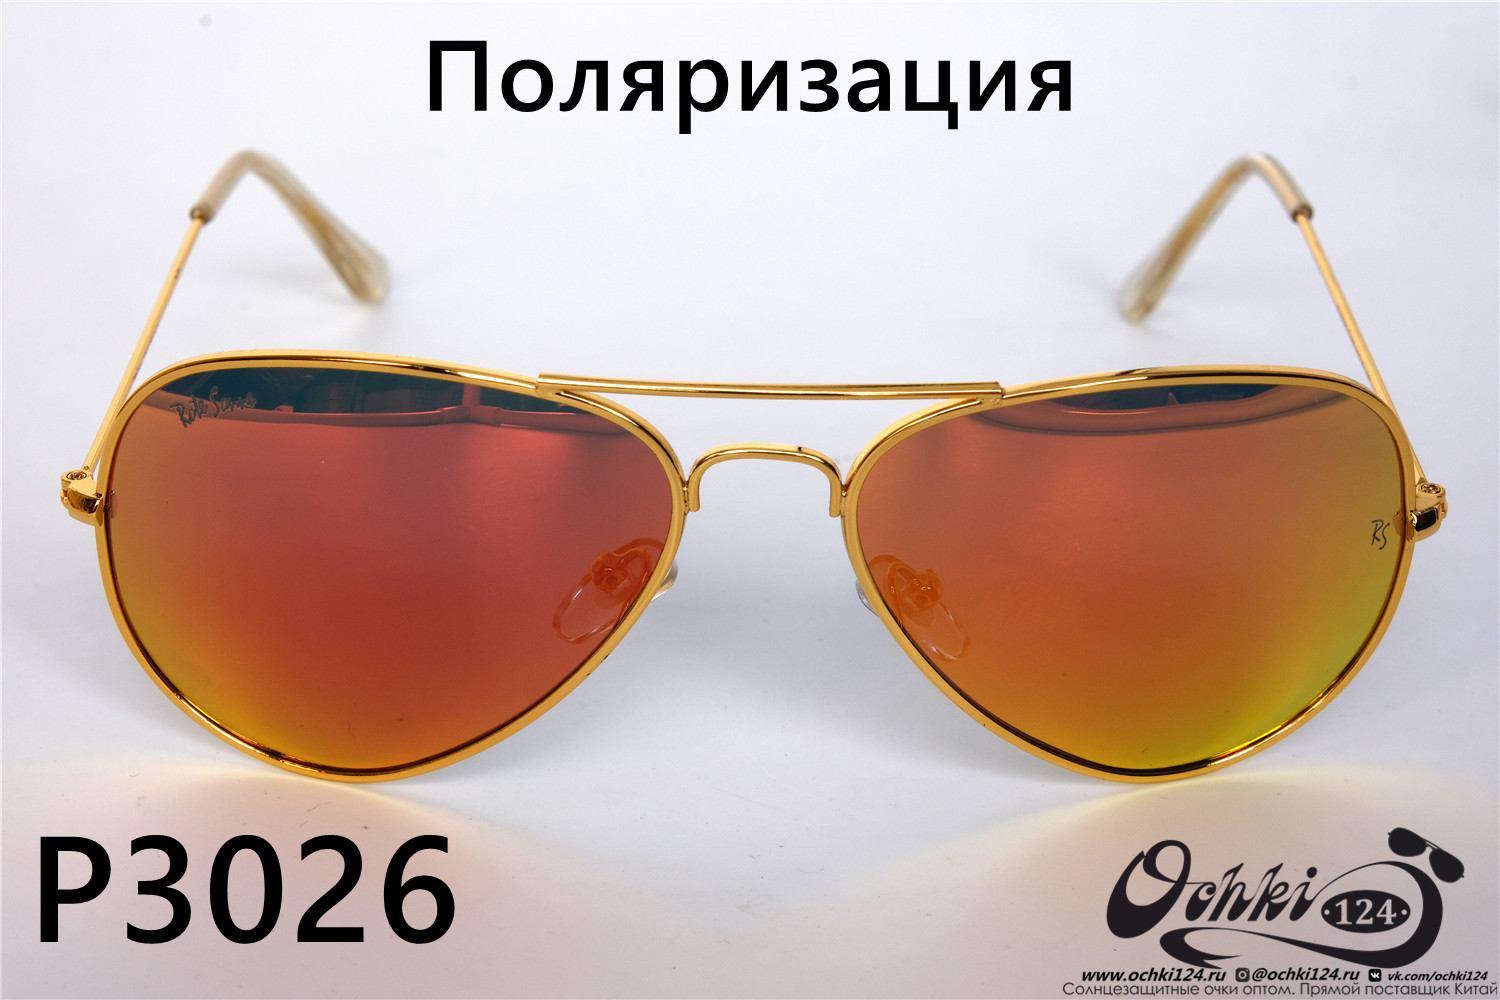  Солнцезащитные очки картинка 2022 Унисекс Поляризованные Авиаторы Rote Sonne P3026-9 